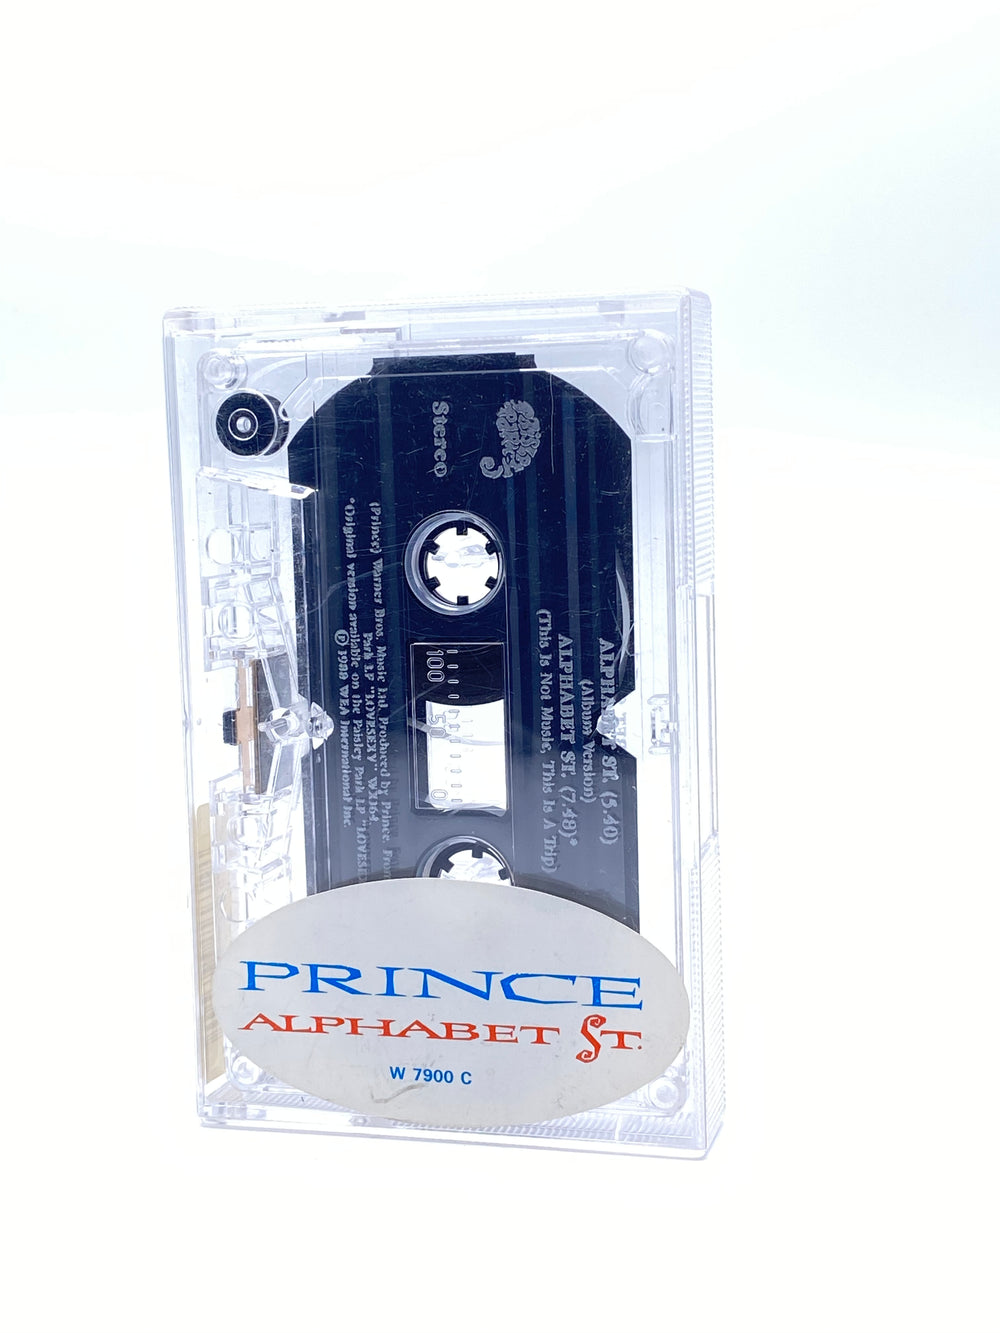 Prince – Alphabet St. Cassette Single UK Preloved: 1988